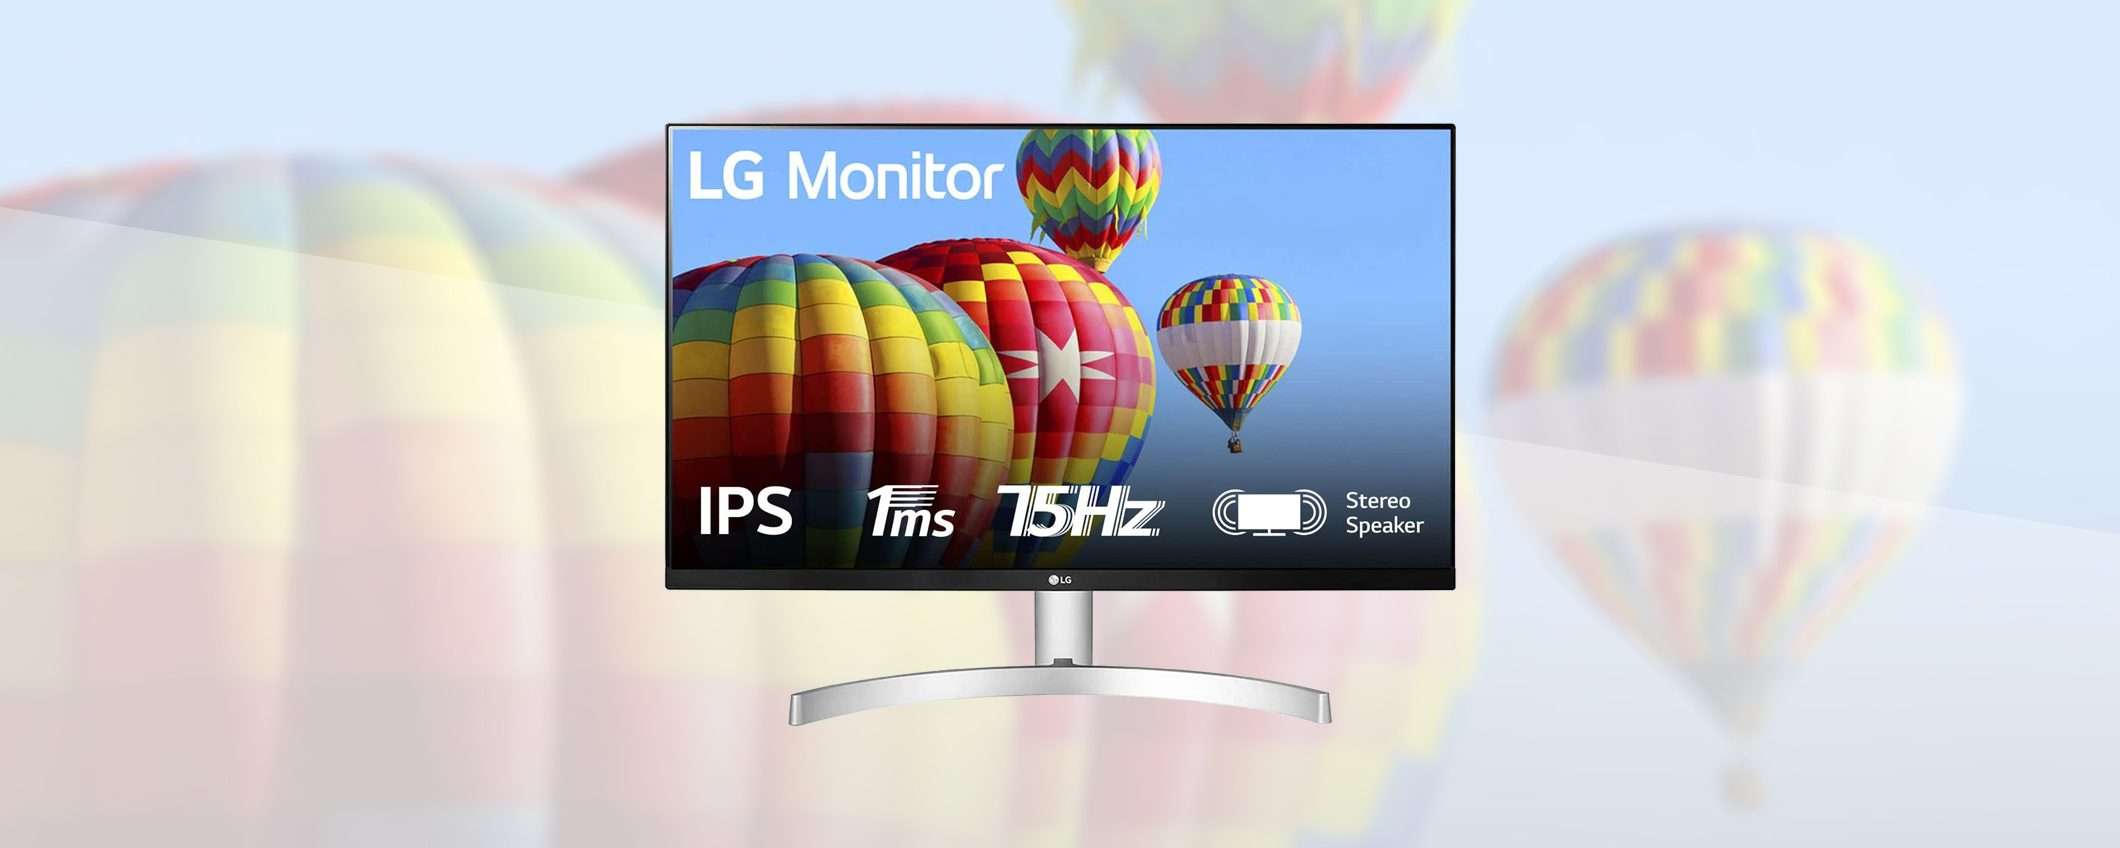 L'offerta sul monitor LG: 27'', FHD, altoparlanti